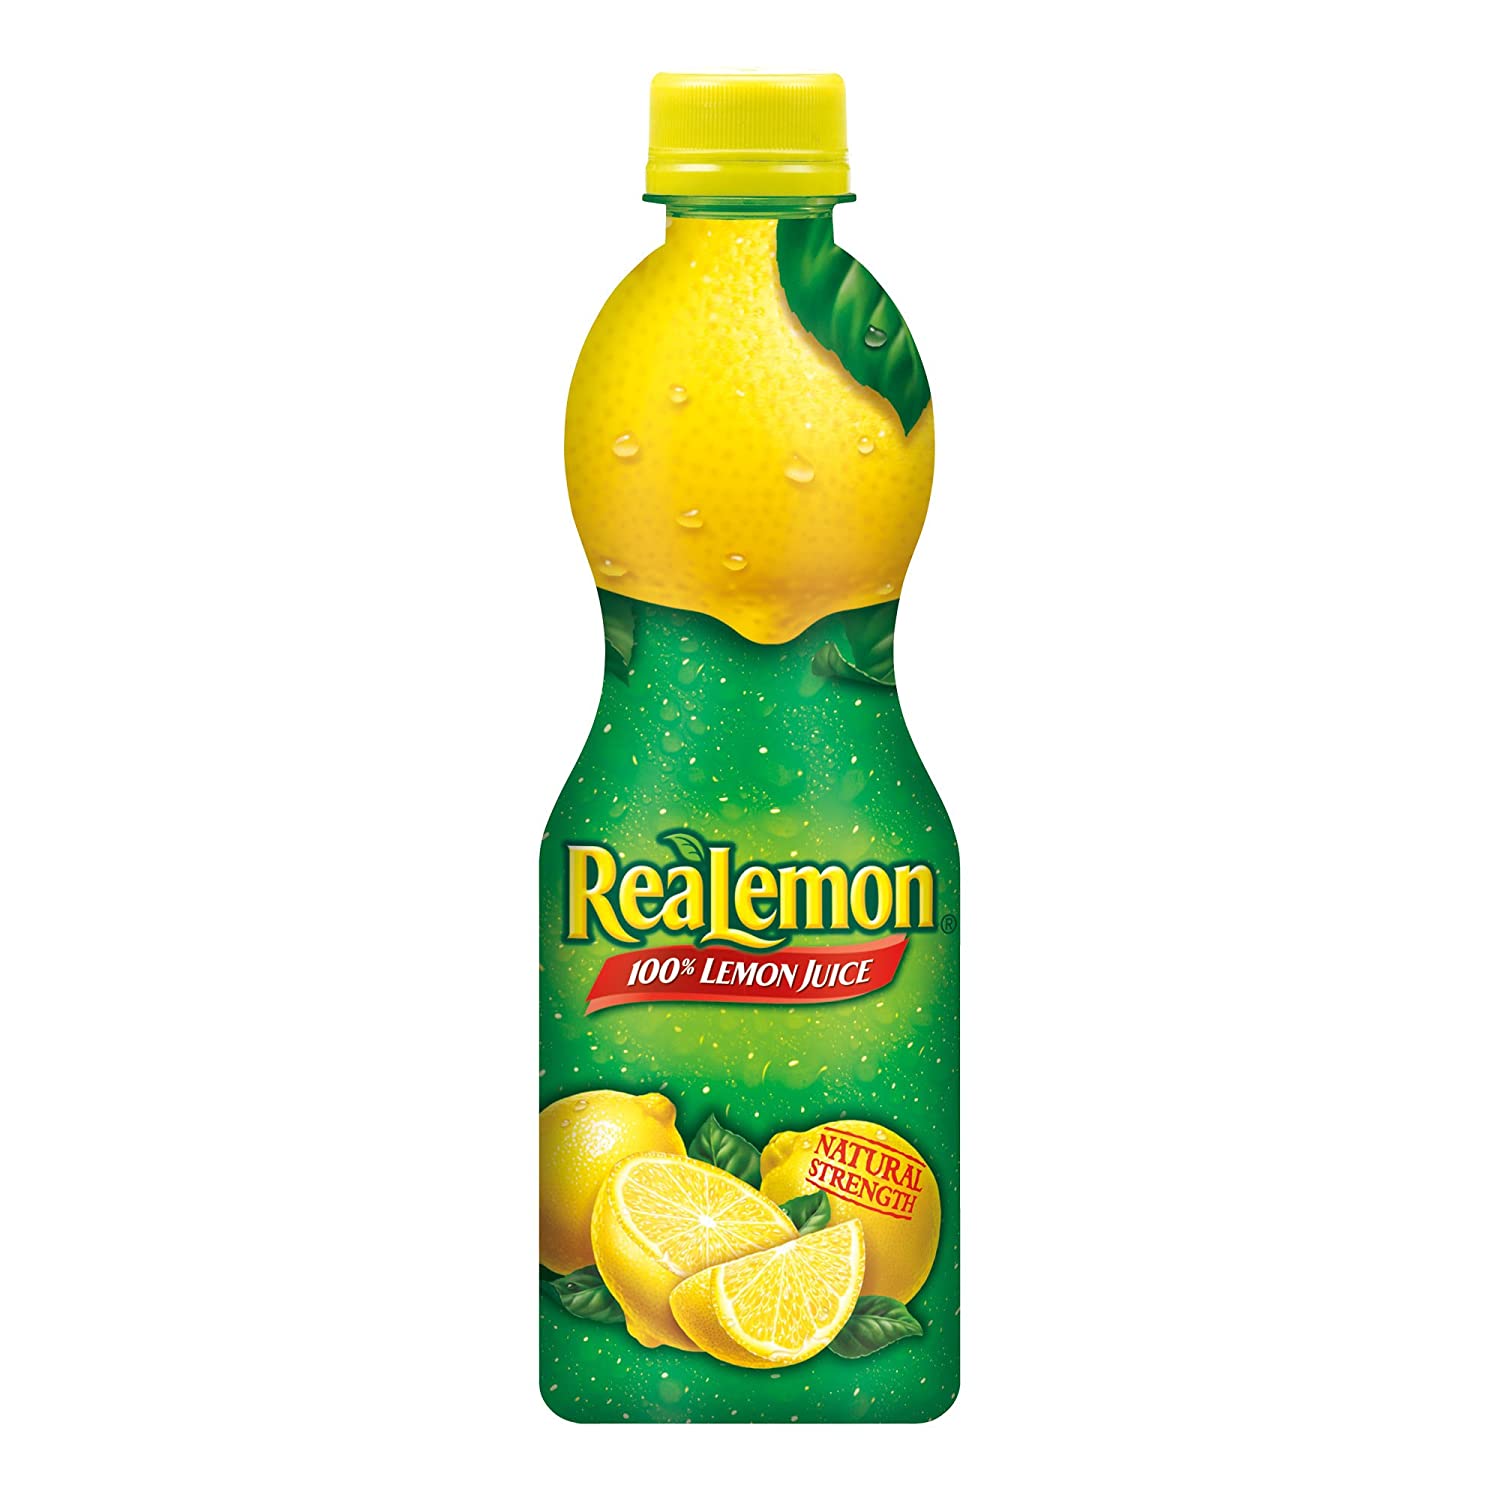 ใช้แทนน้ำส้มสายชูข้าว ReaLemon น้ำมะนาว 100%